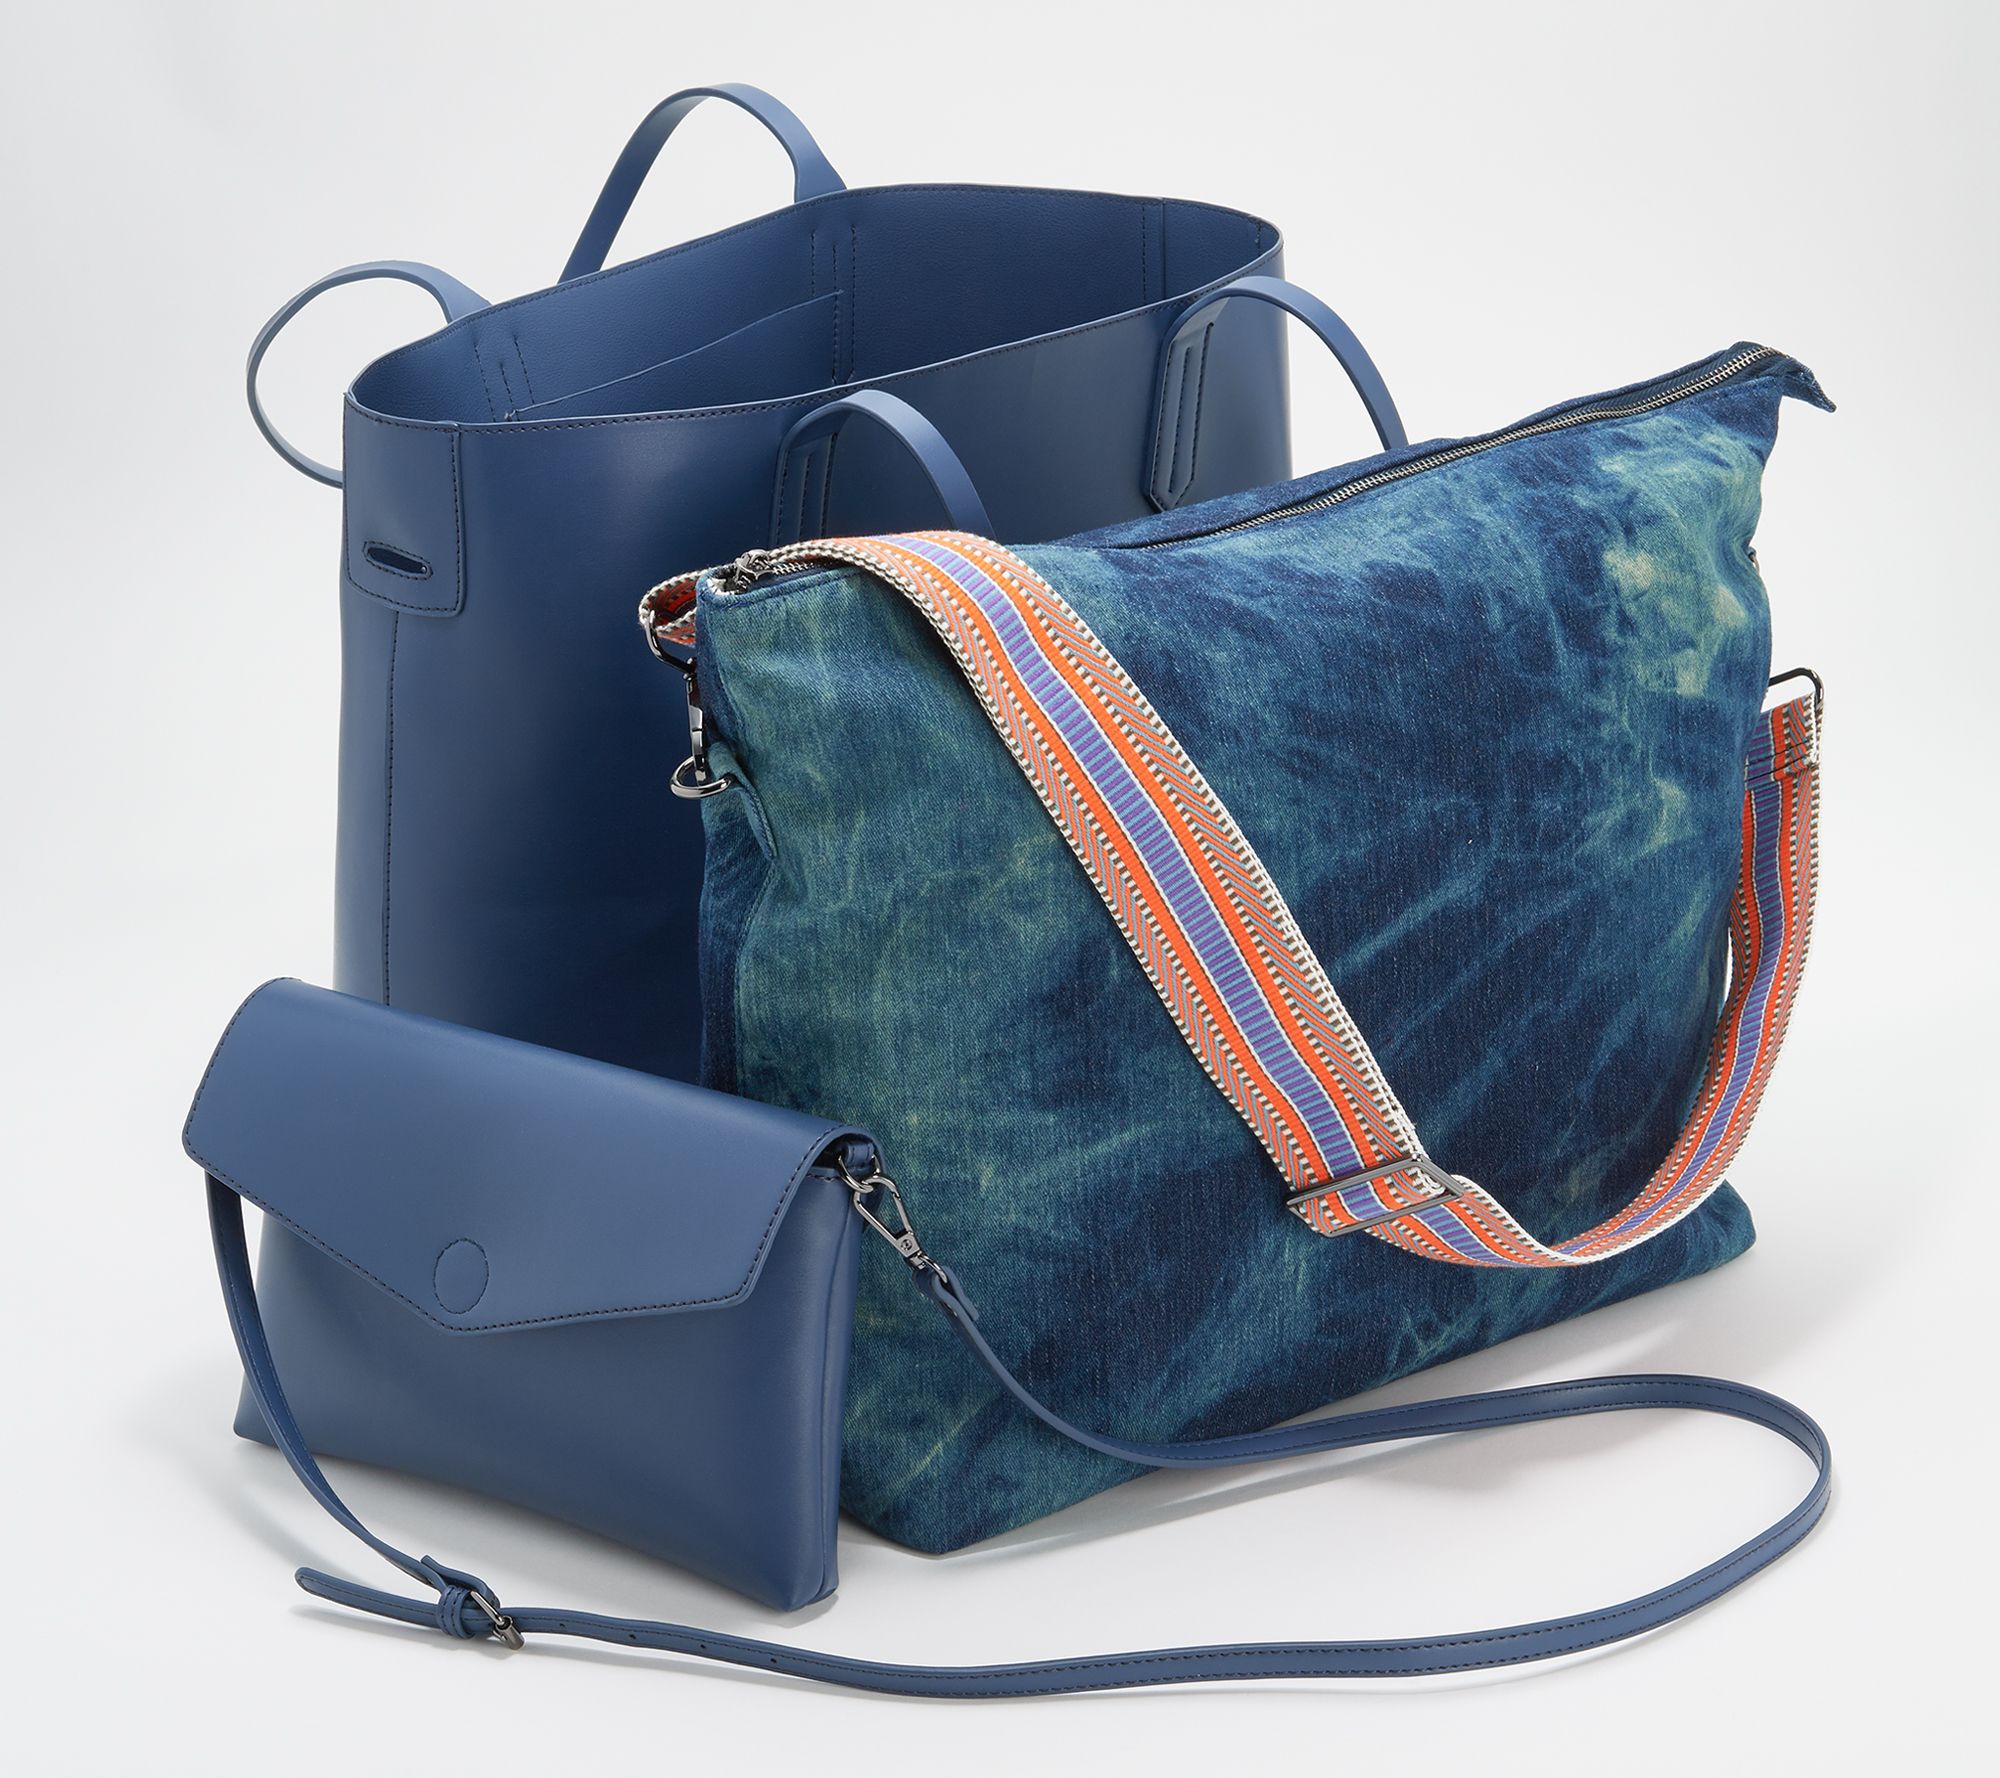 Fauré Le Page Leather Waist Bag - Blue Waist Bags, Handbags - FLP20645